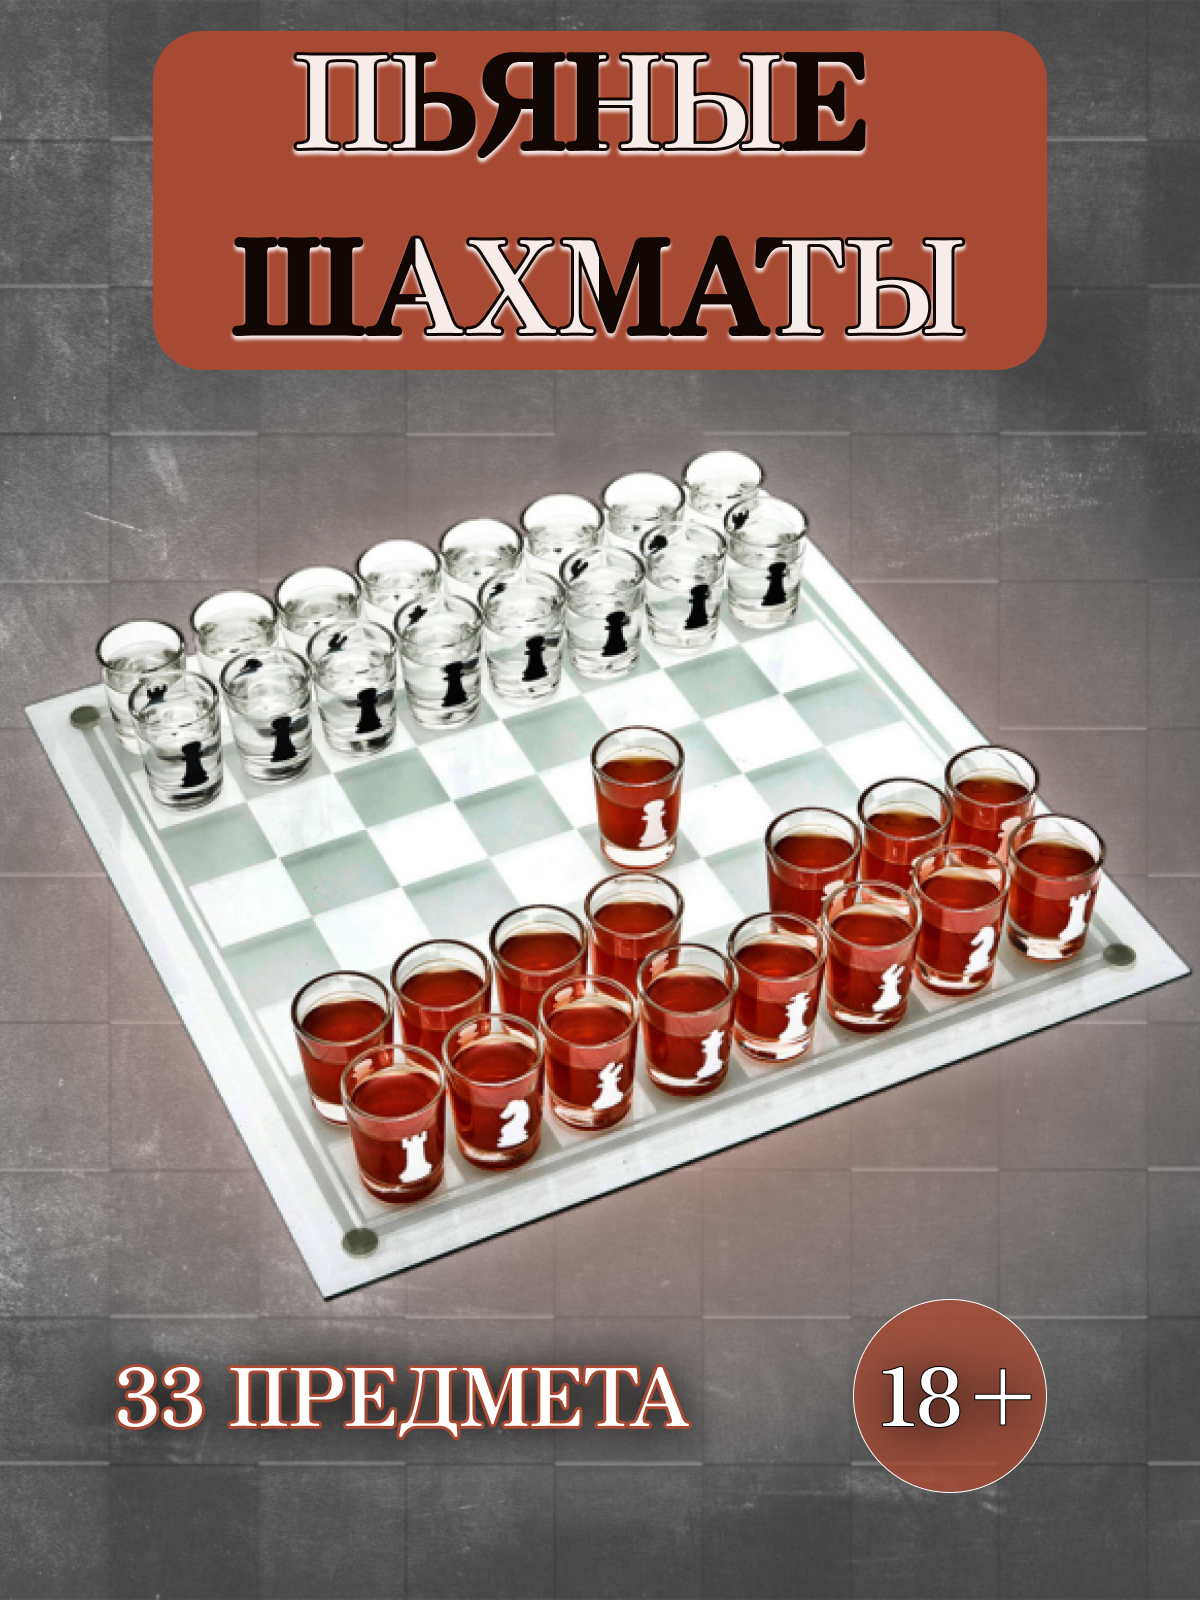 Набор шахматы-стопки "Пьяные шахматы" 40x40 см